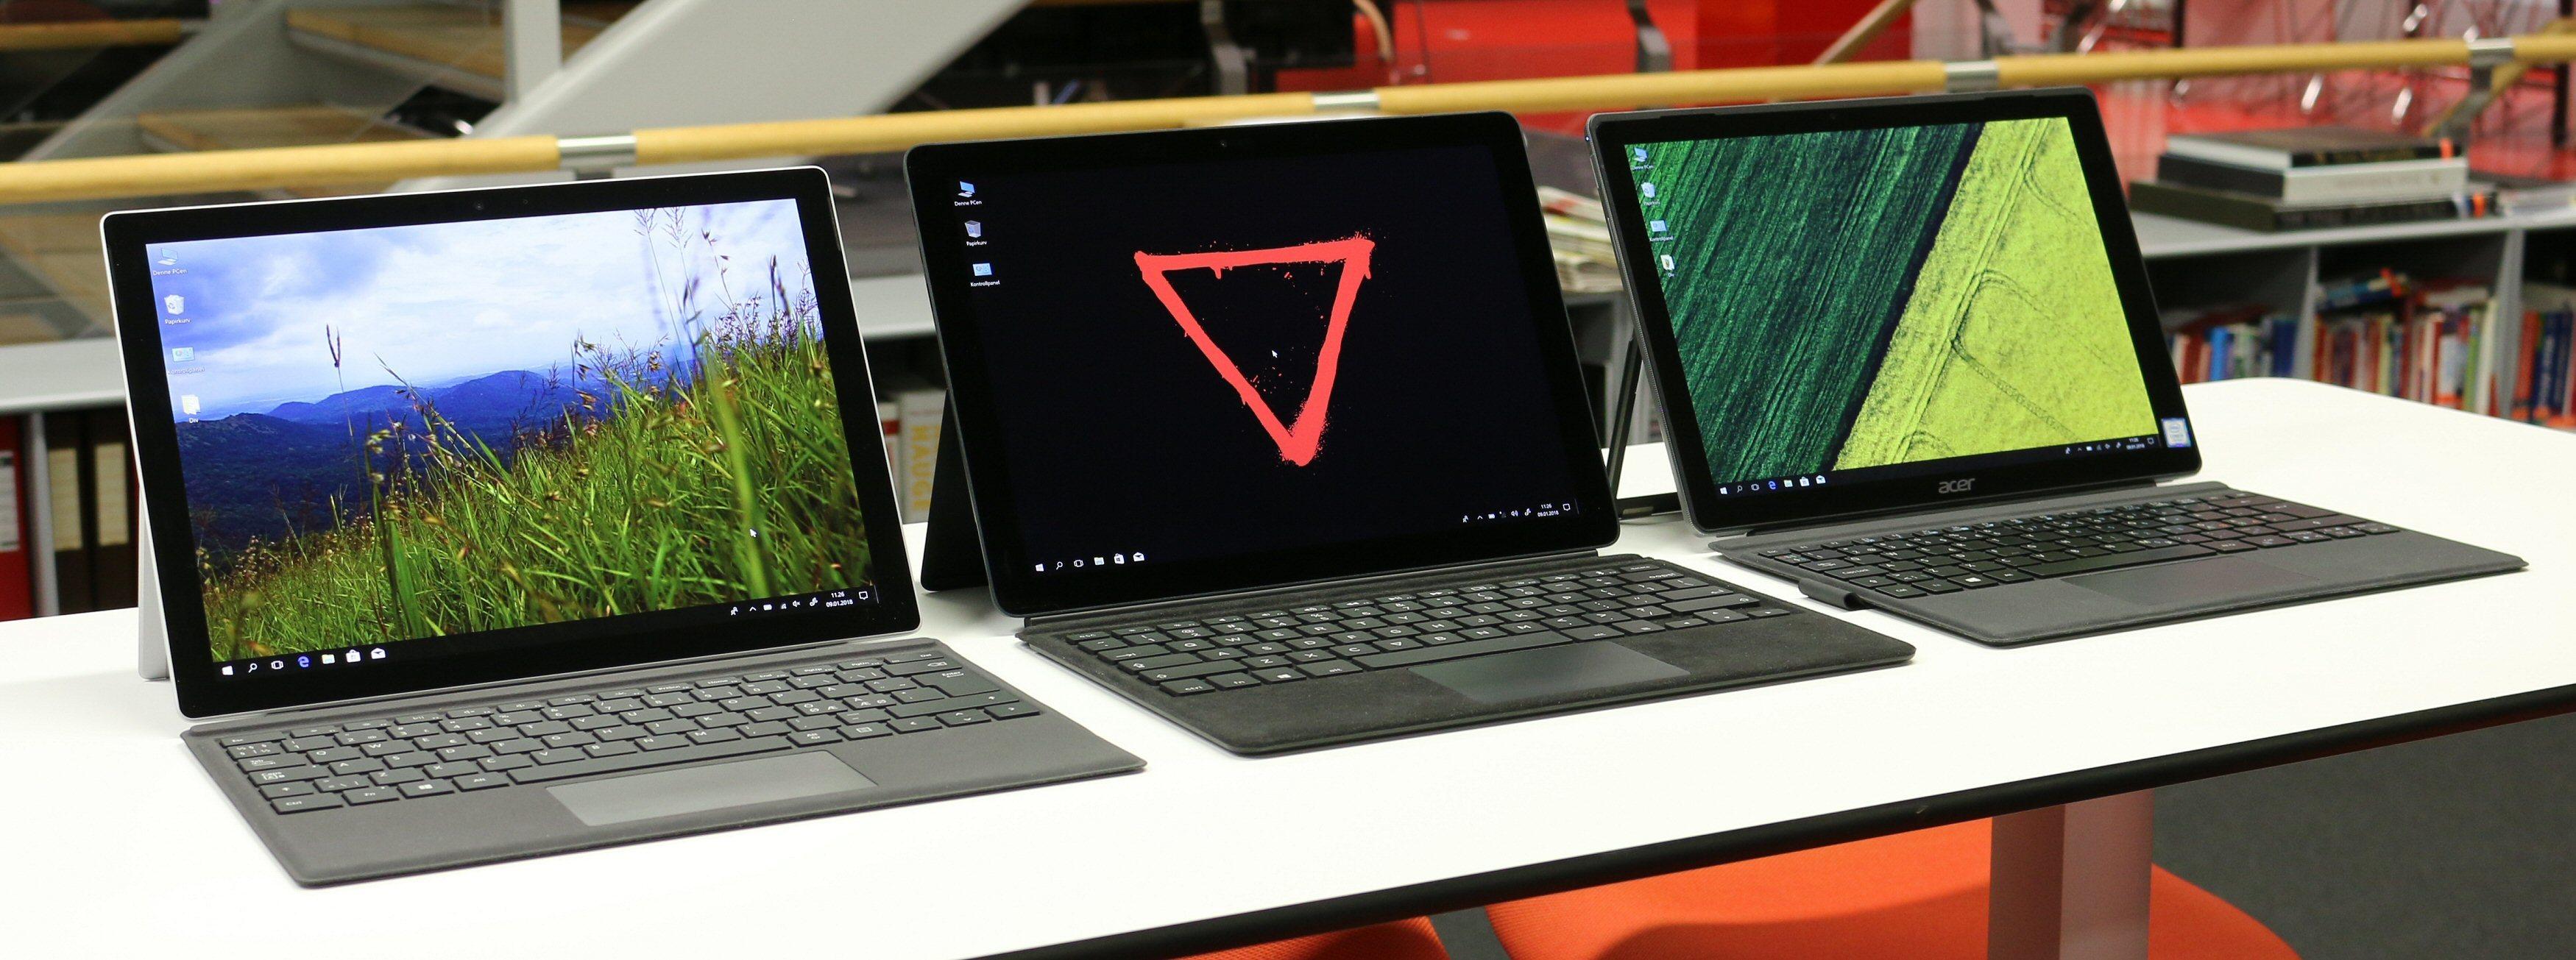 Surface Pro har allerede konkurrenter som Eve-Tech Eve V og Acer Switch 5, men ingen av disse har integrert LTE. Det vil dog dukke opp i andre modeller i løpet av 2018.